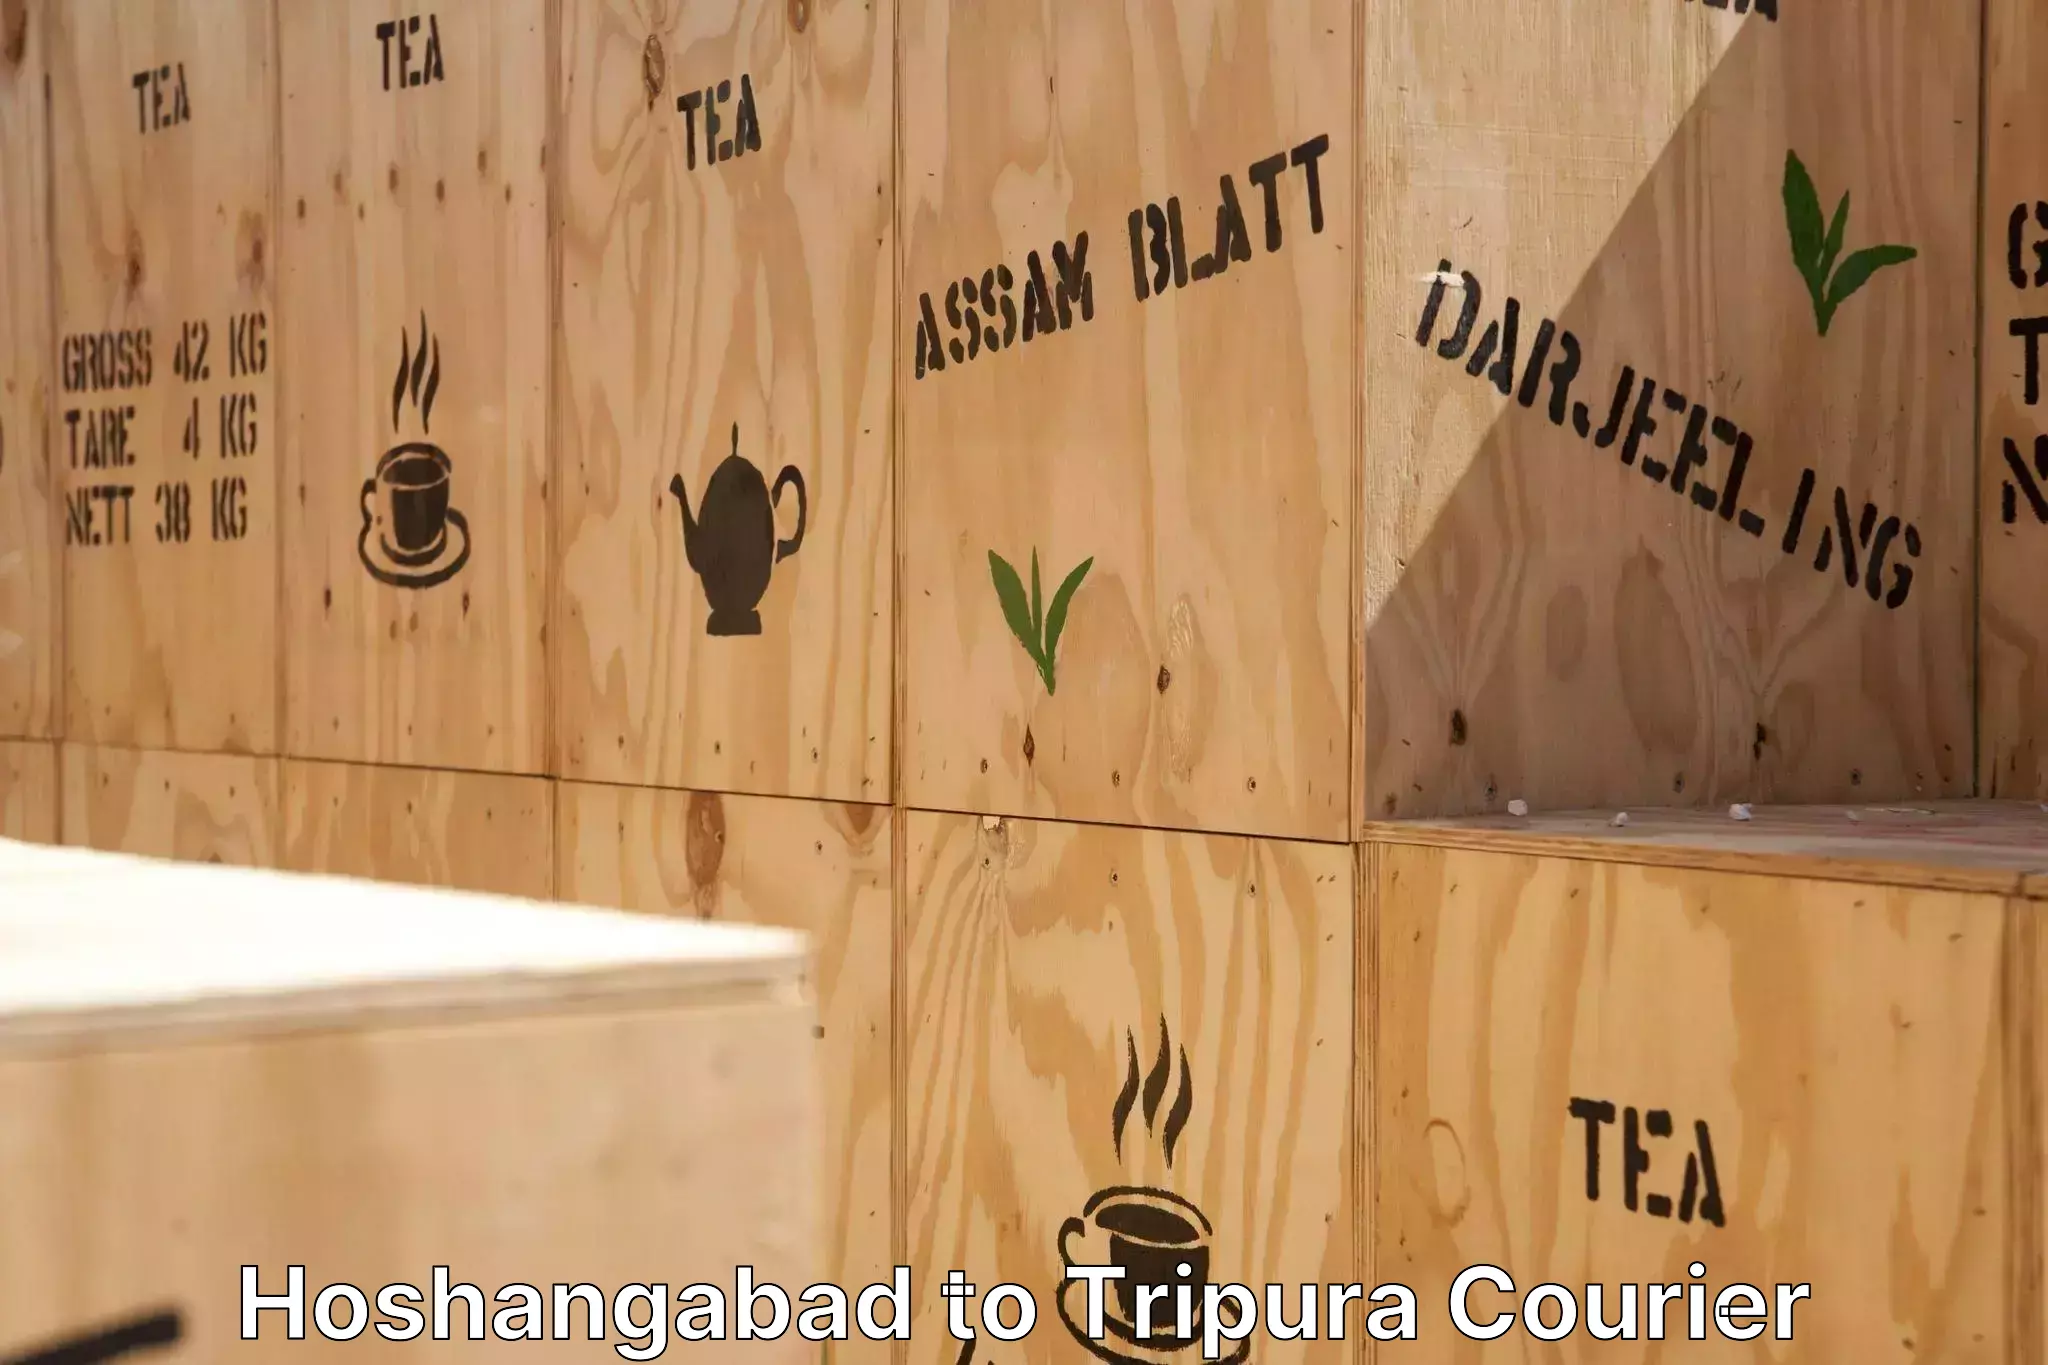 Professional furniture movers Hoshangabad to Udaipur Tripura